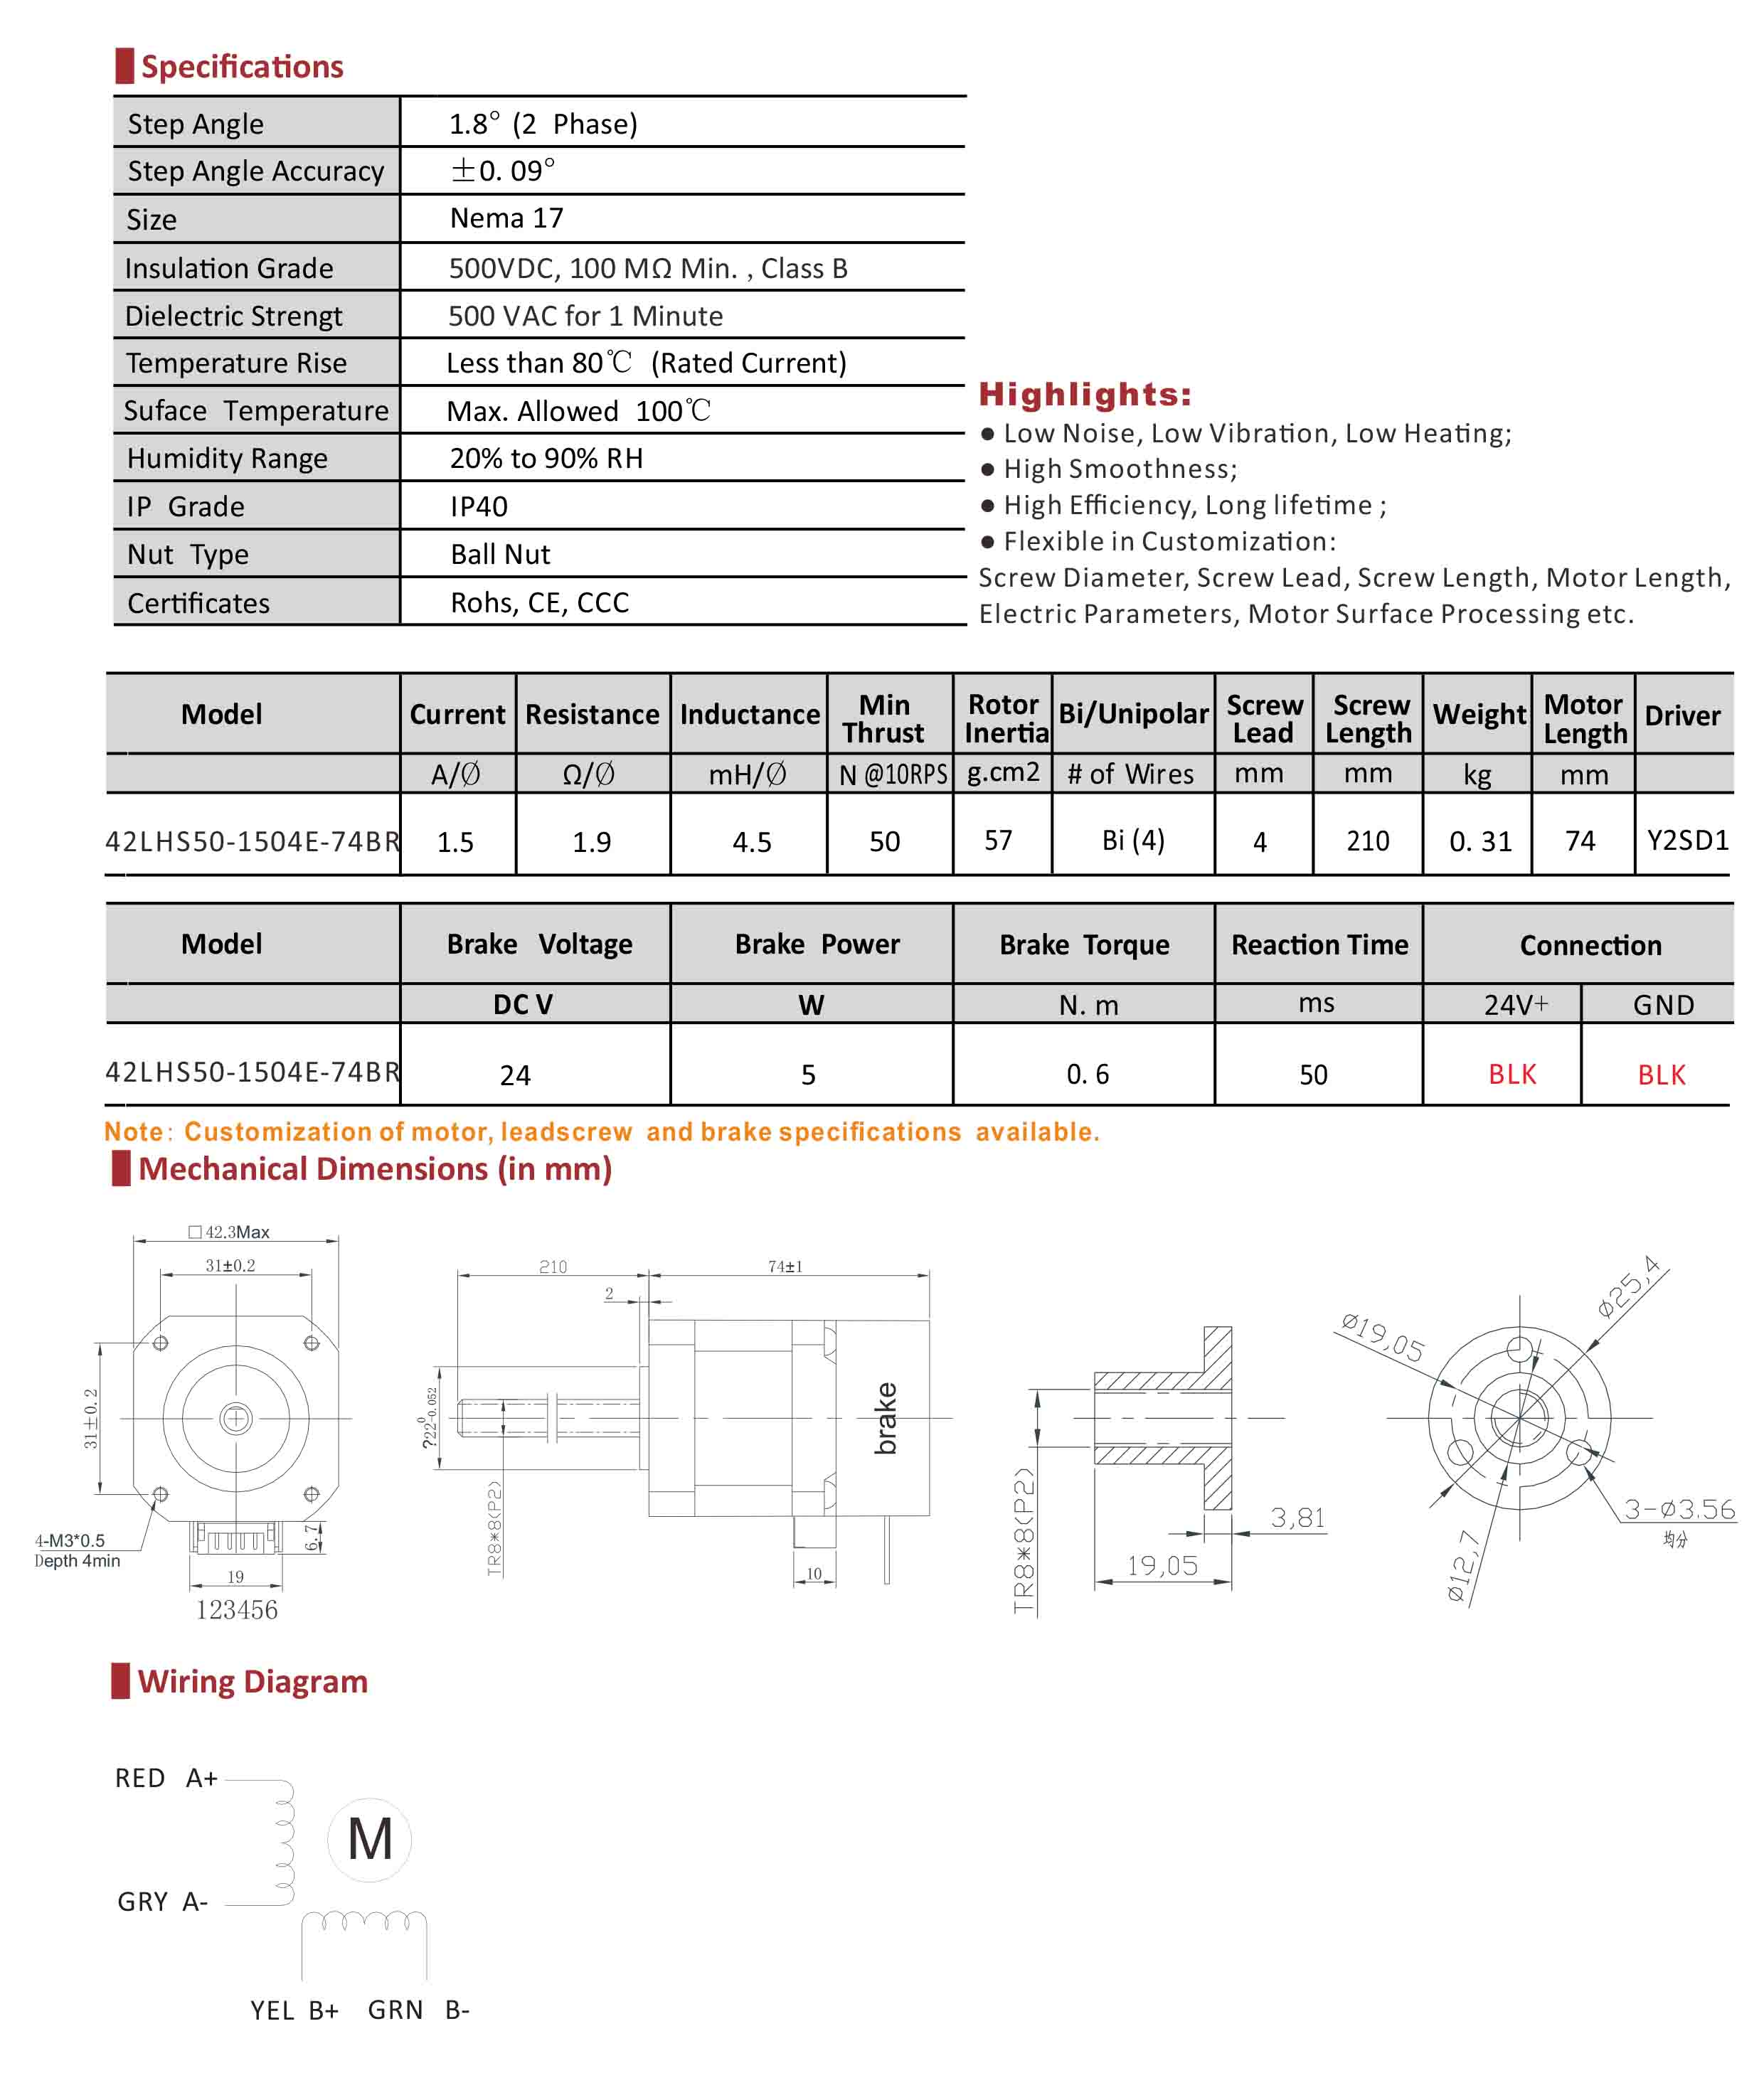 42LHS1504E-210BR External Nut Hybrid Linear Stepper Motor with Brake Data Sheet.jpg